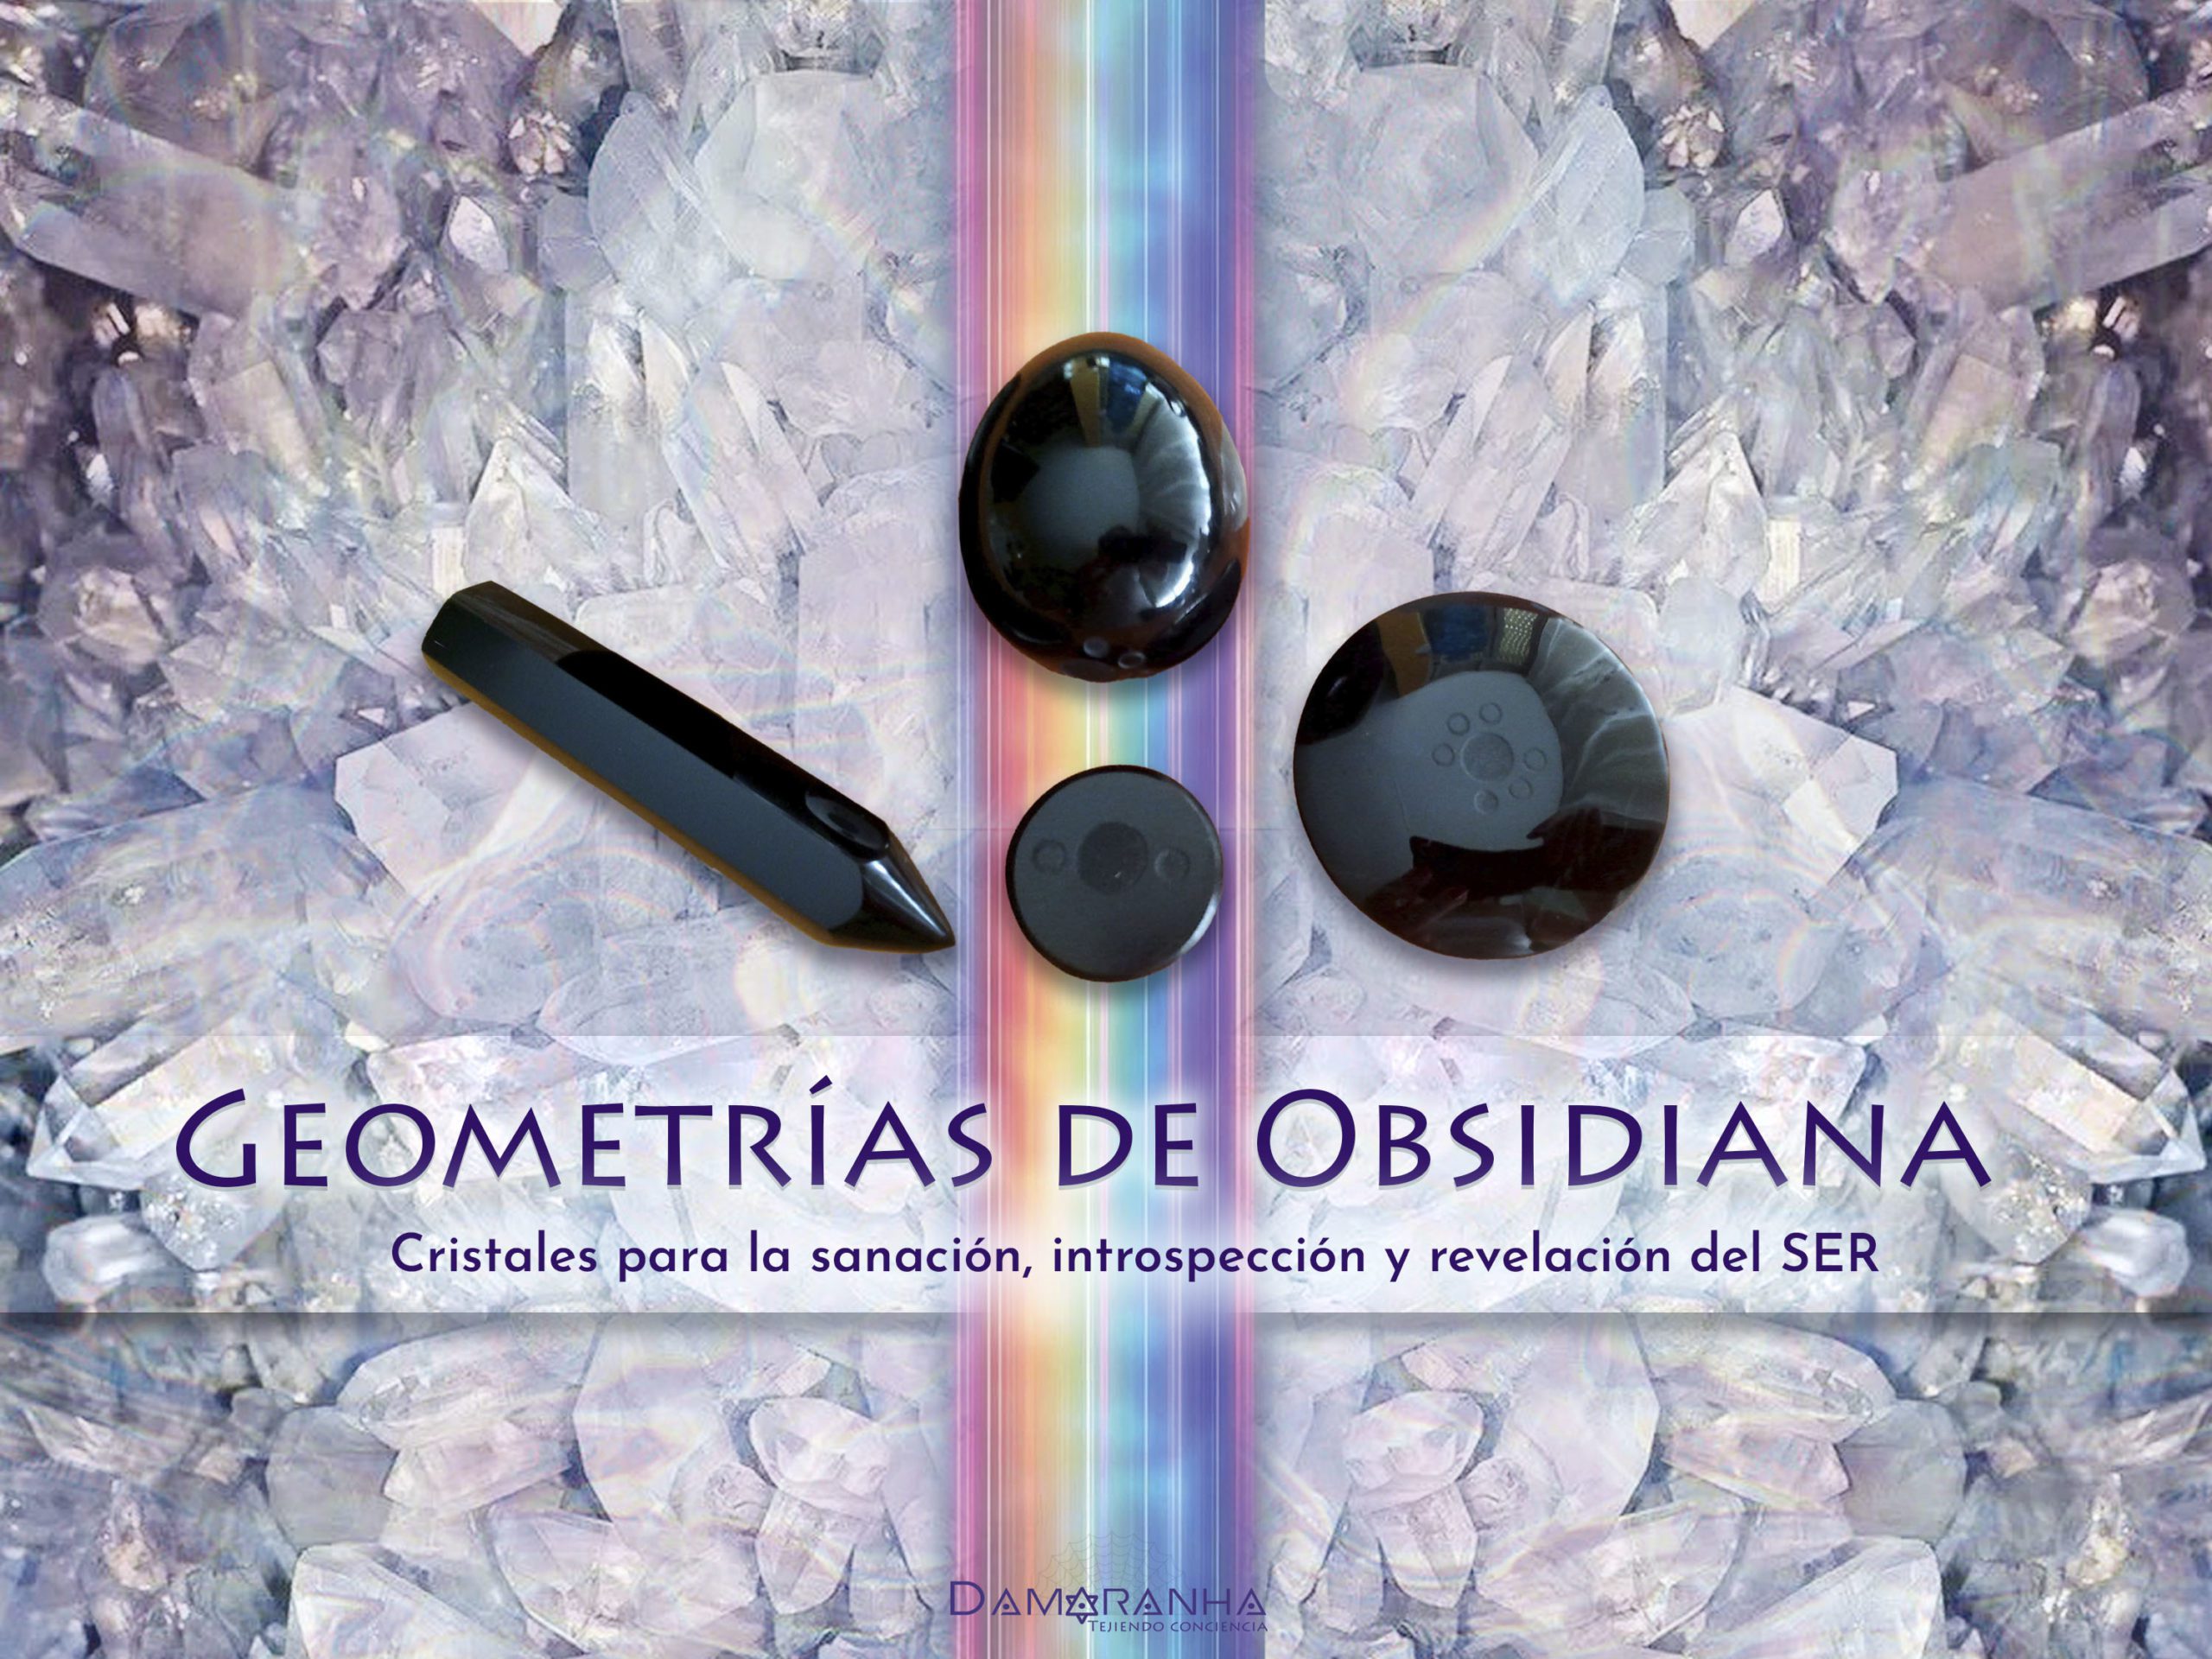 Geometrias de Obsidiana